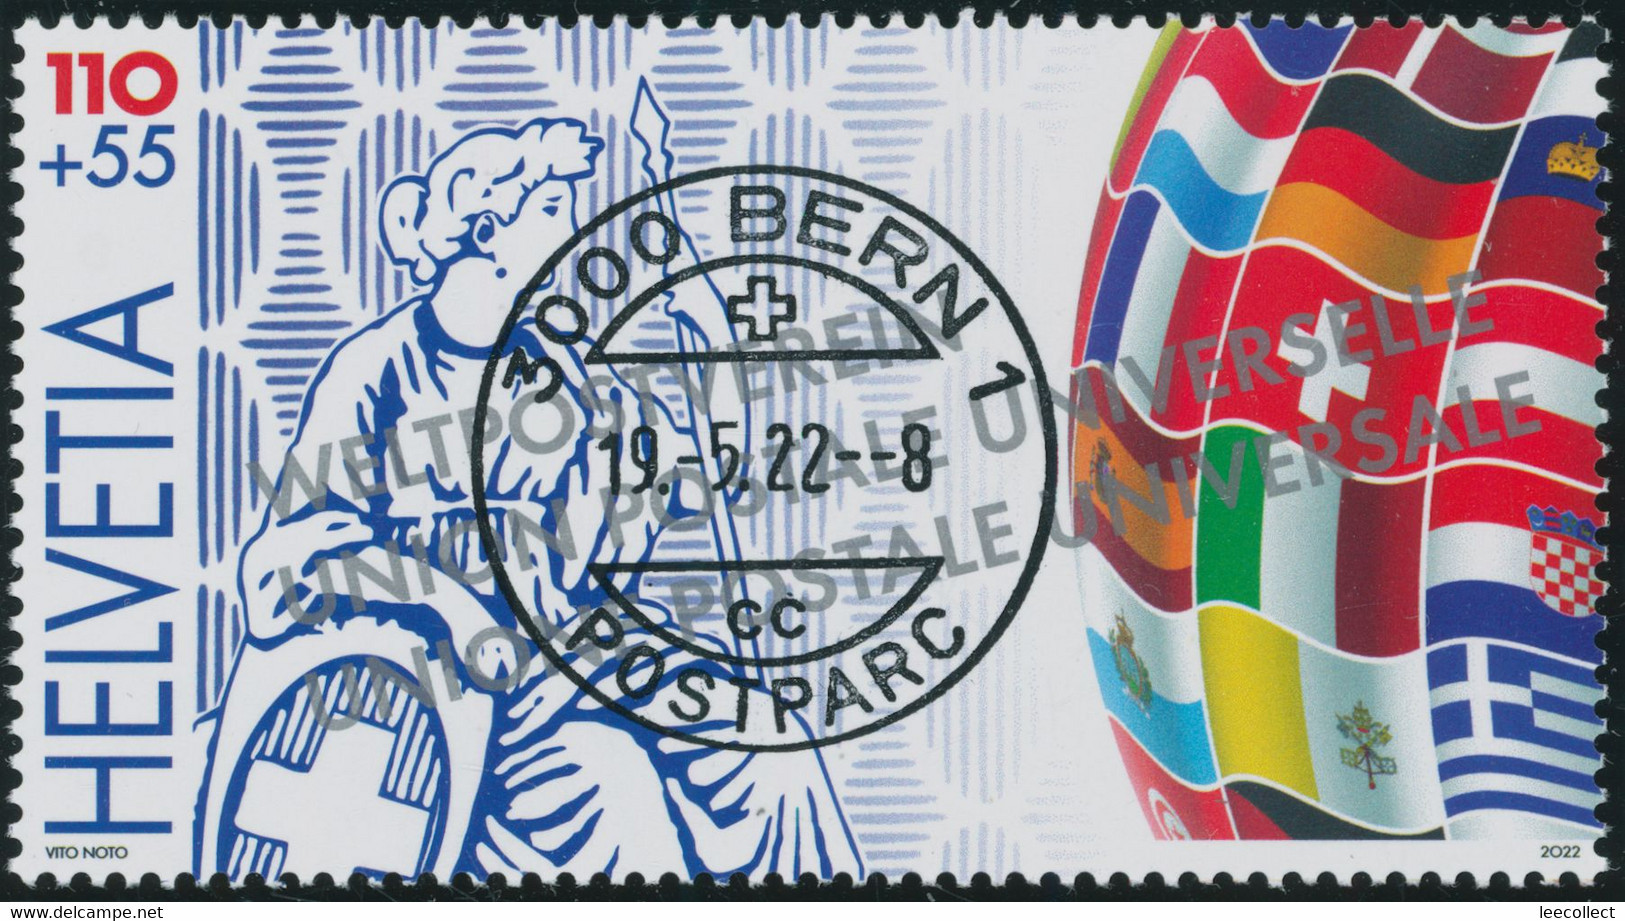 Suisse - 2022 - Lugano - Helvetia - Weltausstellung - Alle 5 Blockausschnitte - Ersttag Voll Stempel ET - Spezialausgabe - Used Stamps